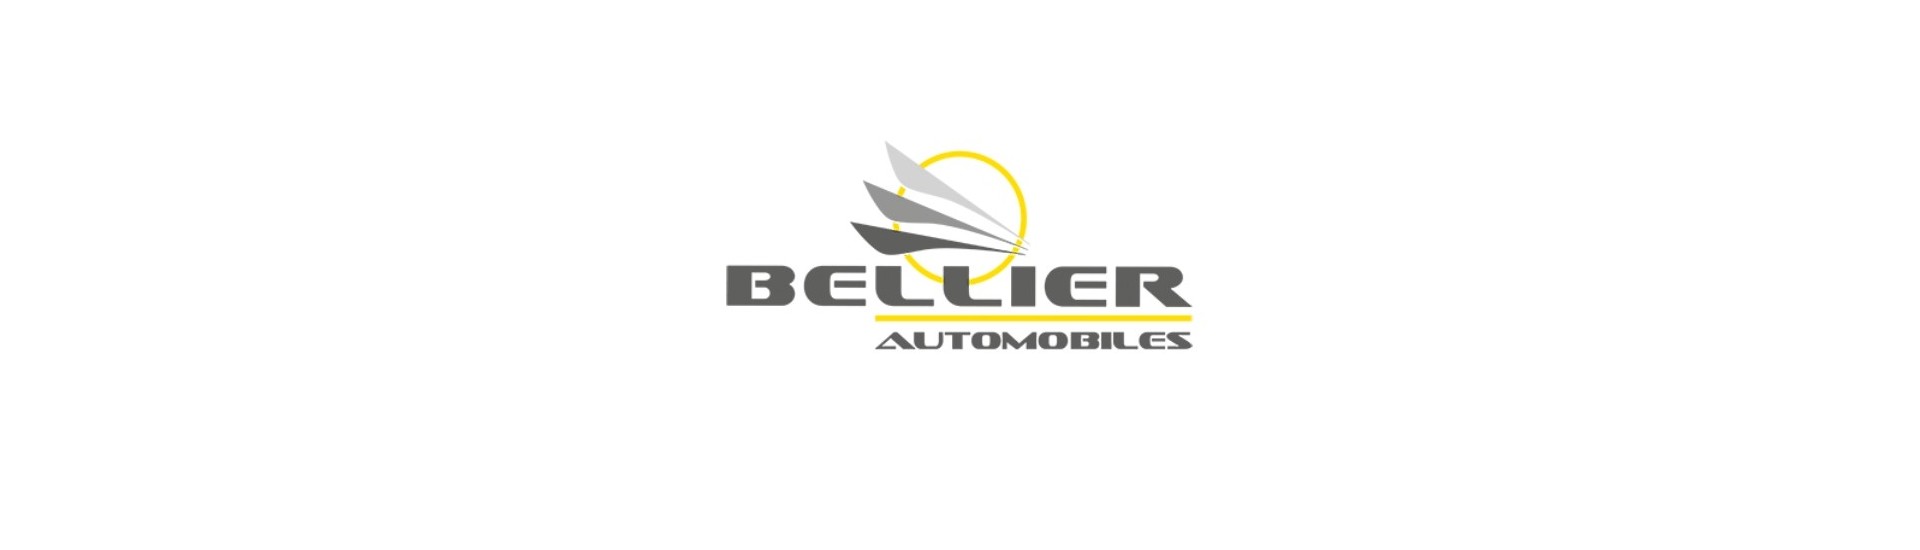 Alavanca de velocidade ao melhor preço para o carro sem licença Bellier